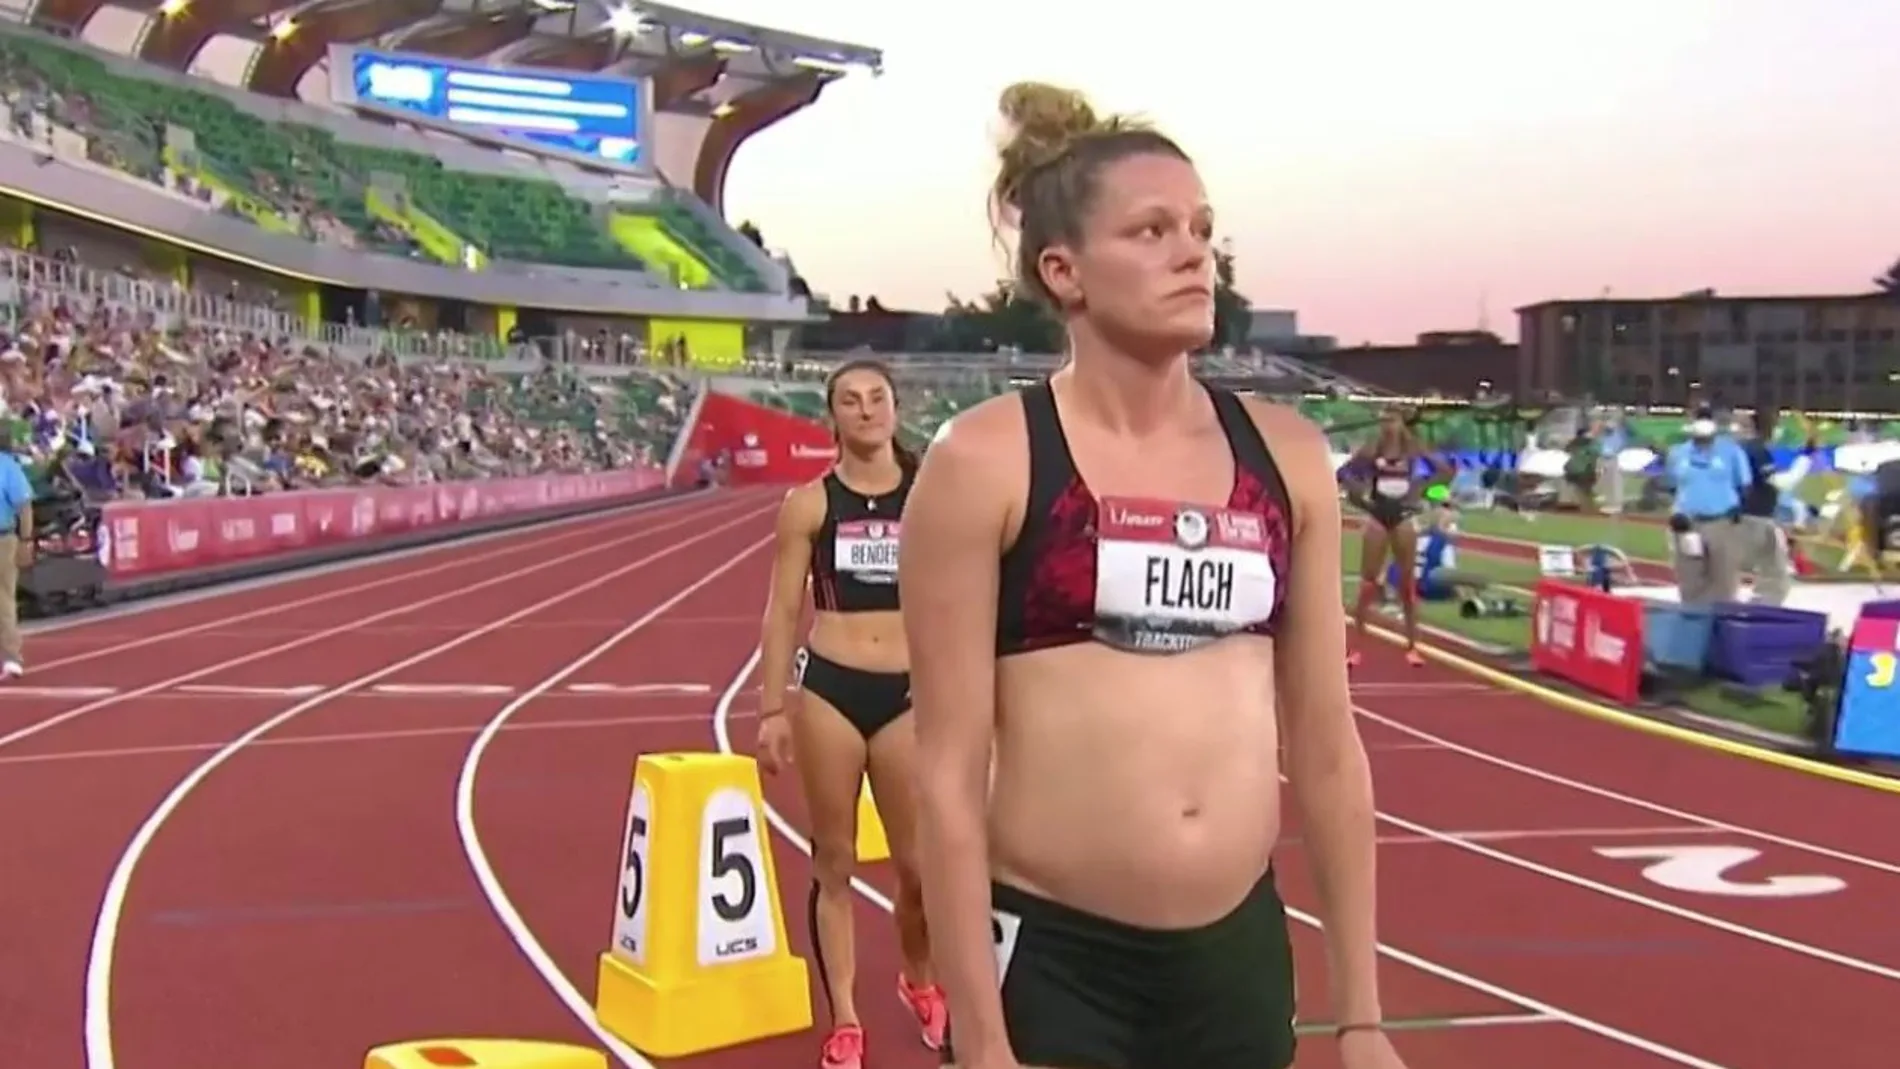 Lindsay Flach, la atleta embarazada de casi 5 meses que compitió por ir a los Juegos Olímpicos